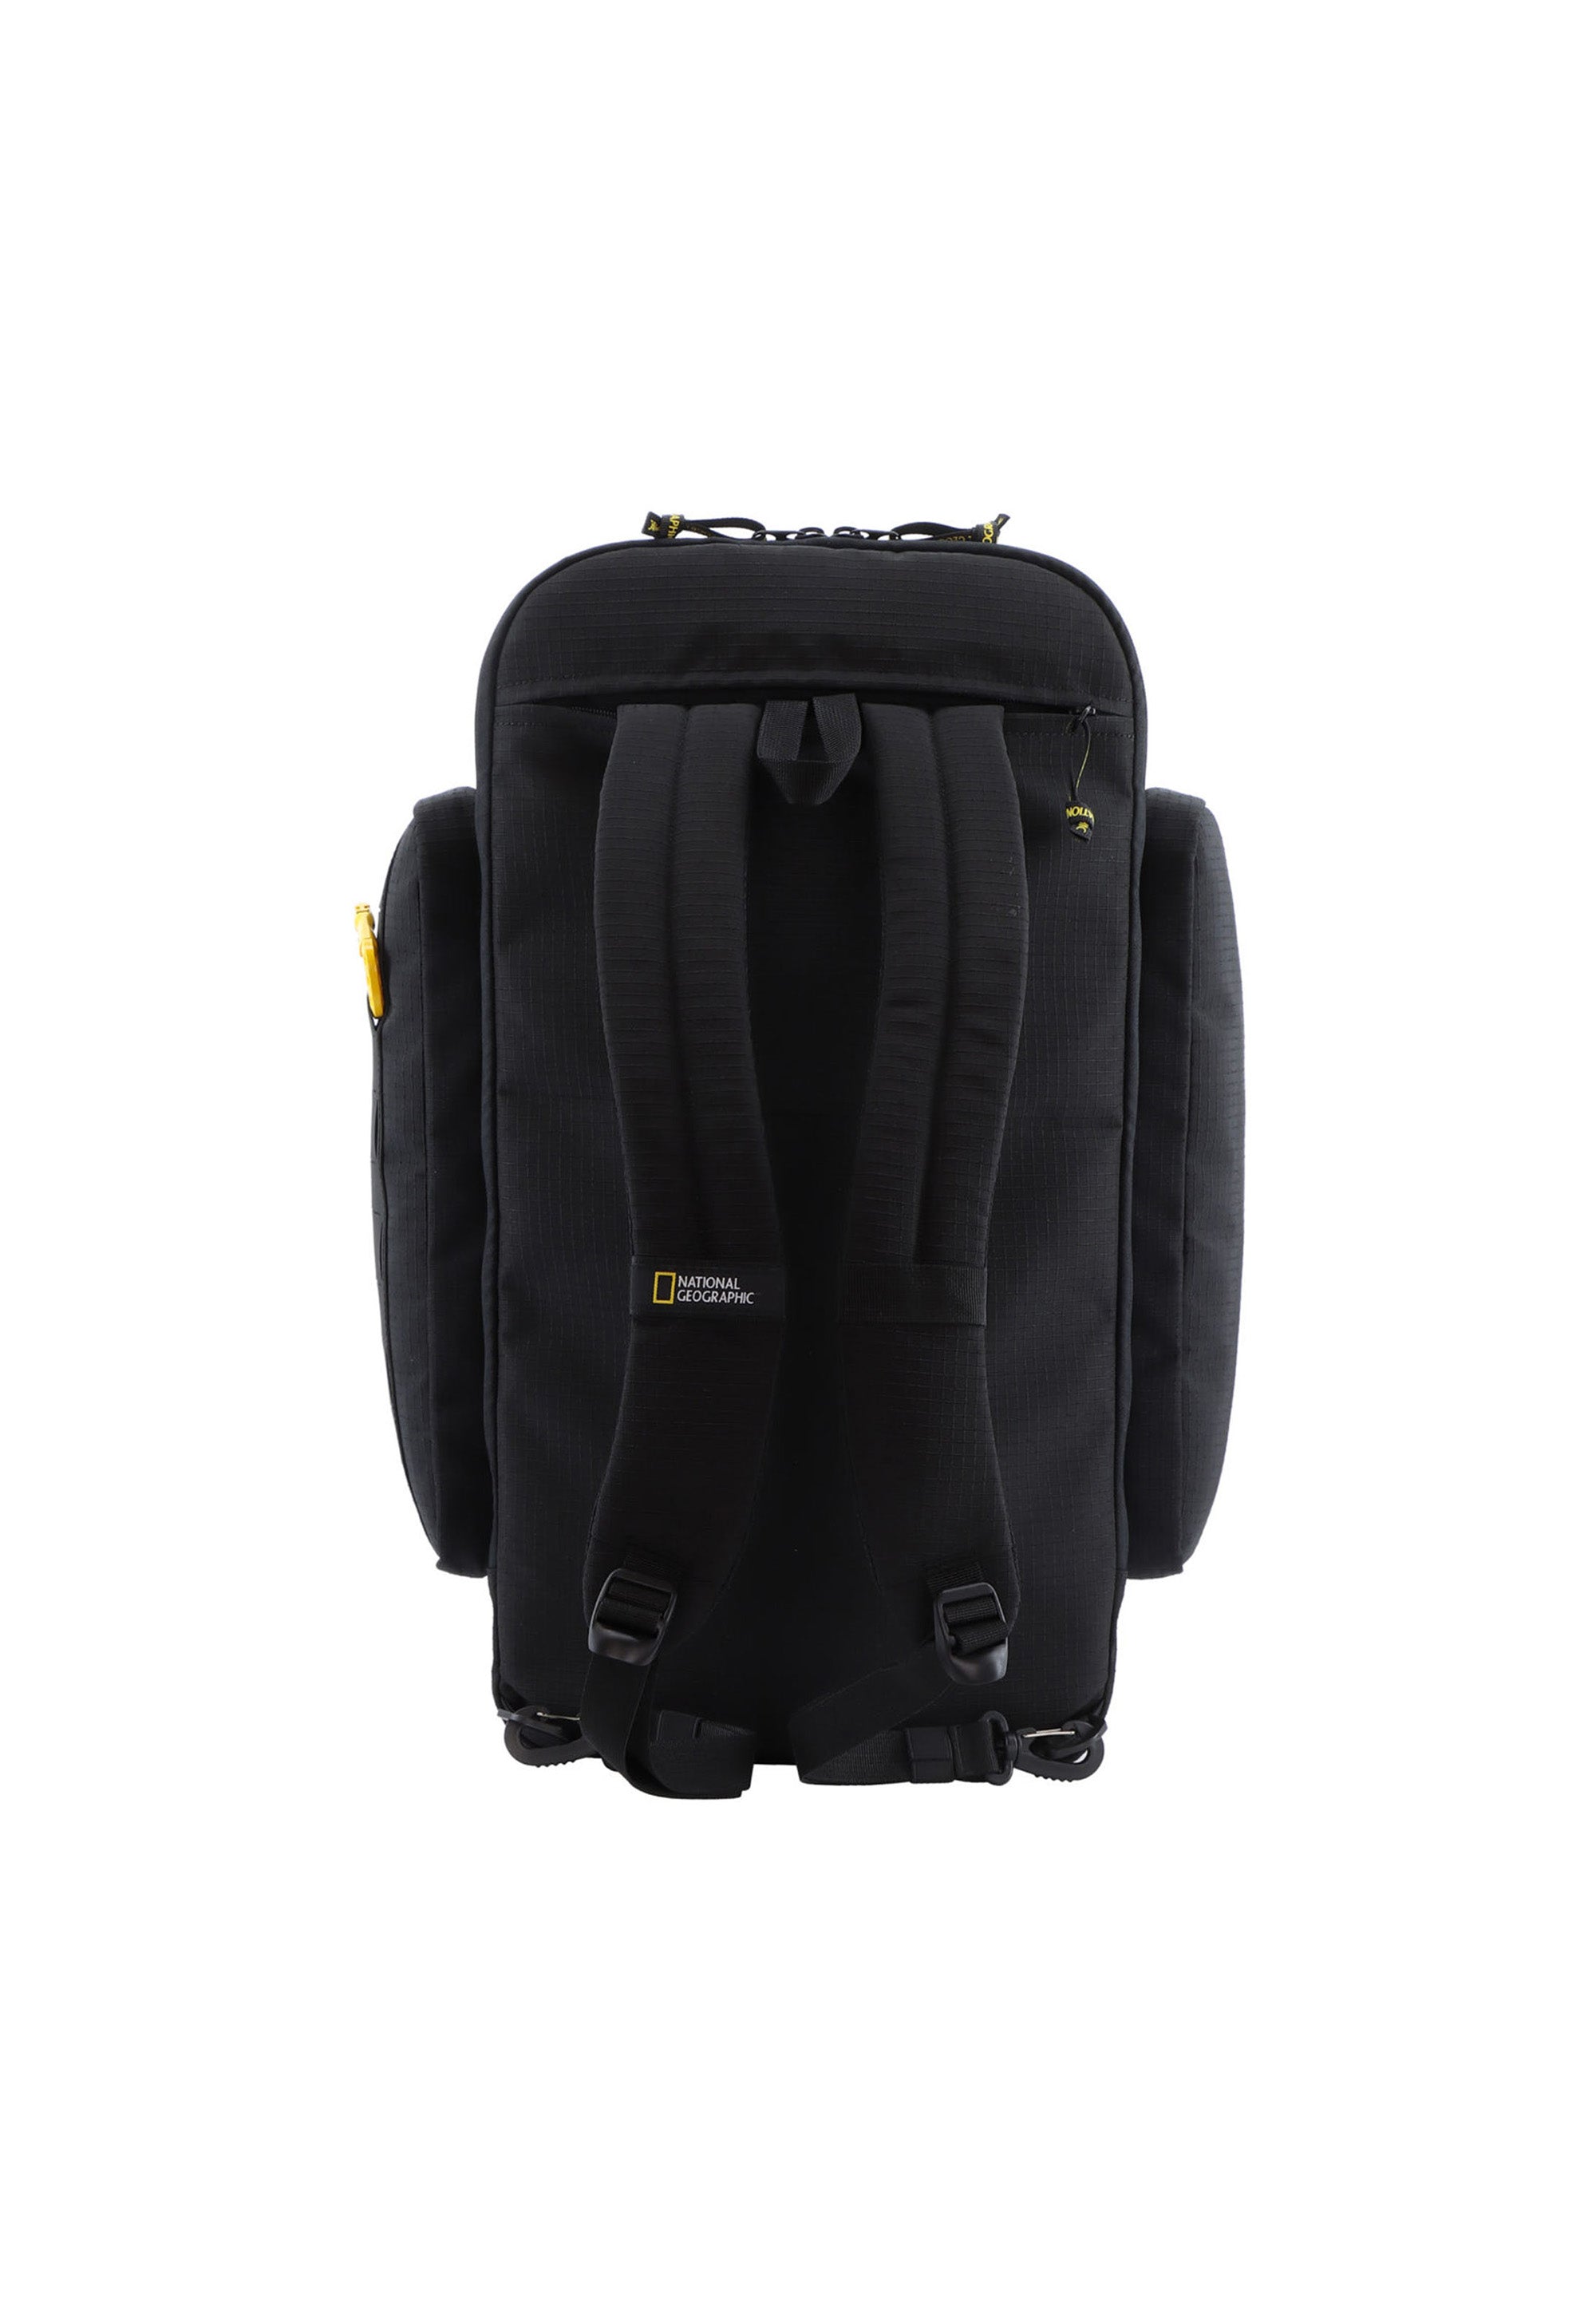 National Geographic - Explorer III | Reisetasche Sporttasche mit Rucksackfunktion aus recycelten PET-Flaschen | Schwarz